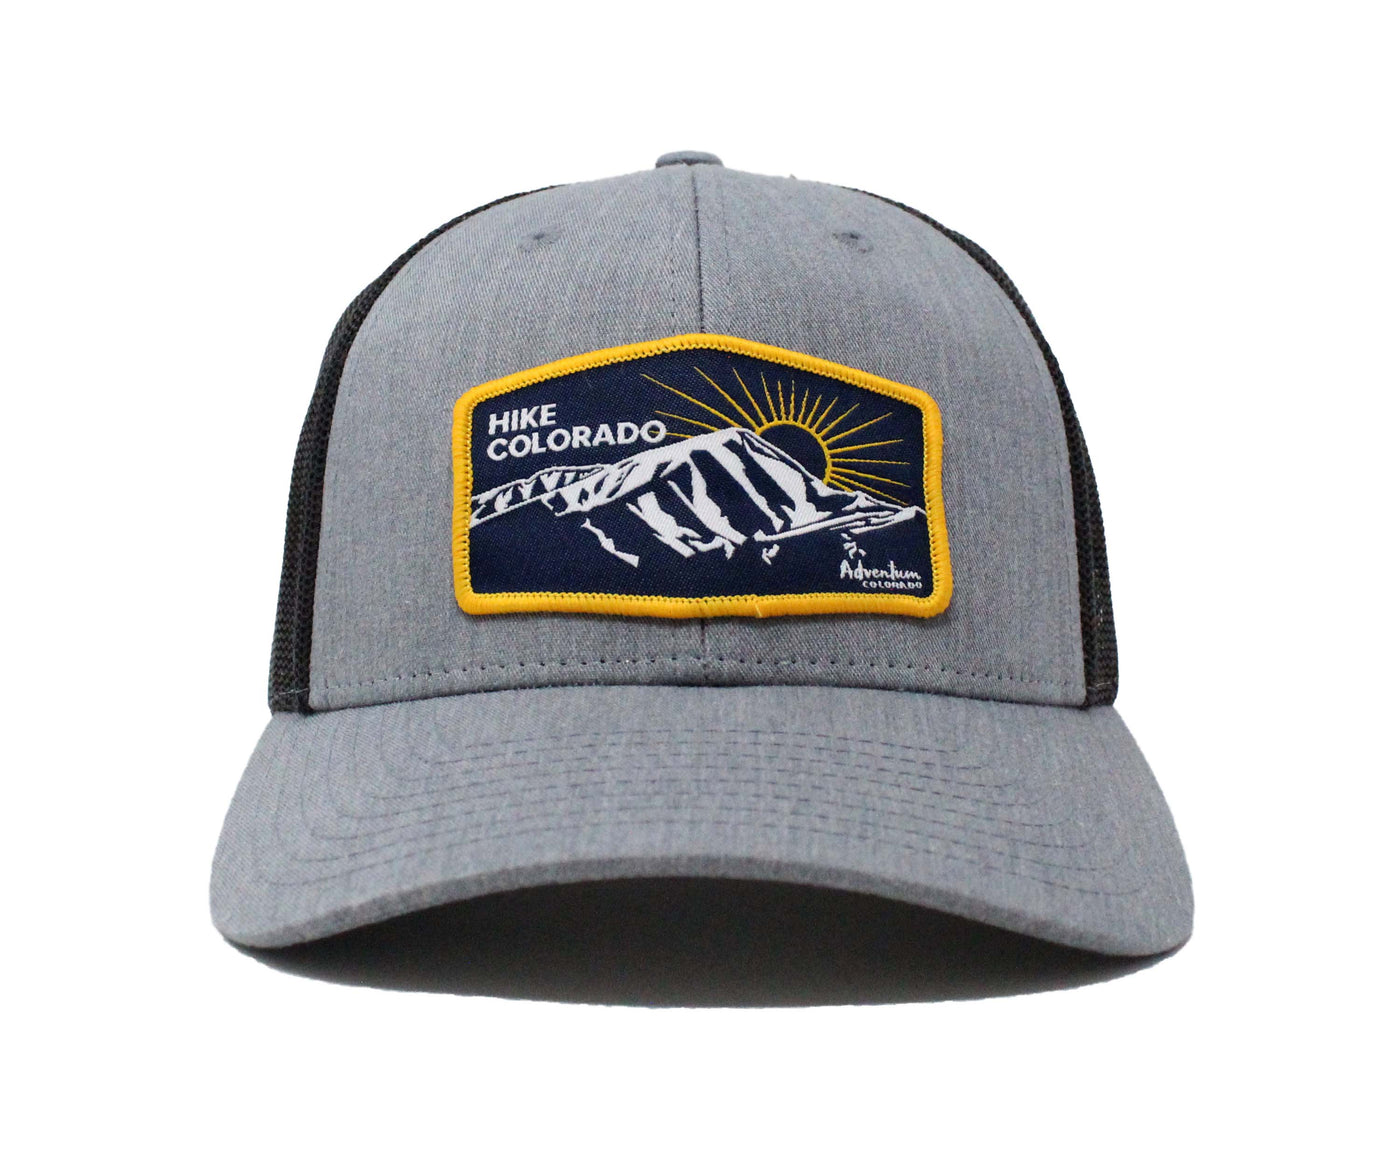 Hike Colorado Trucker Hat